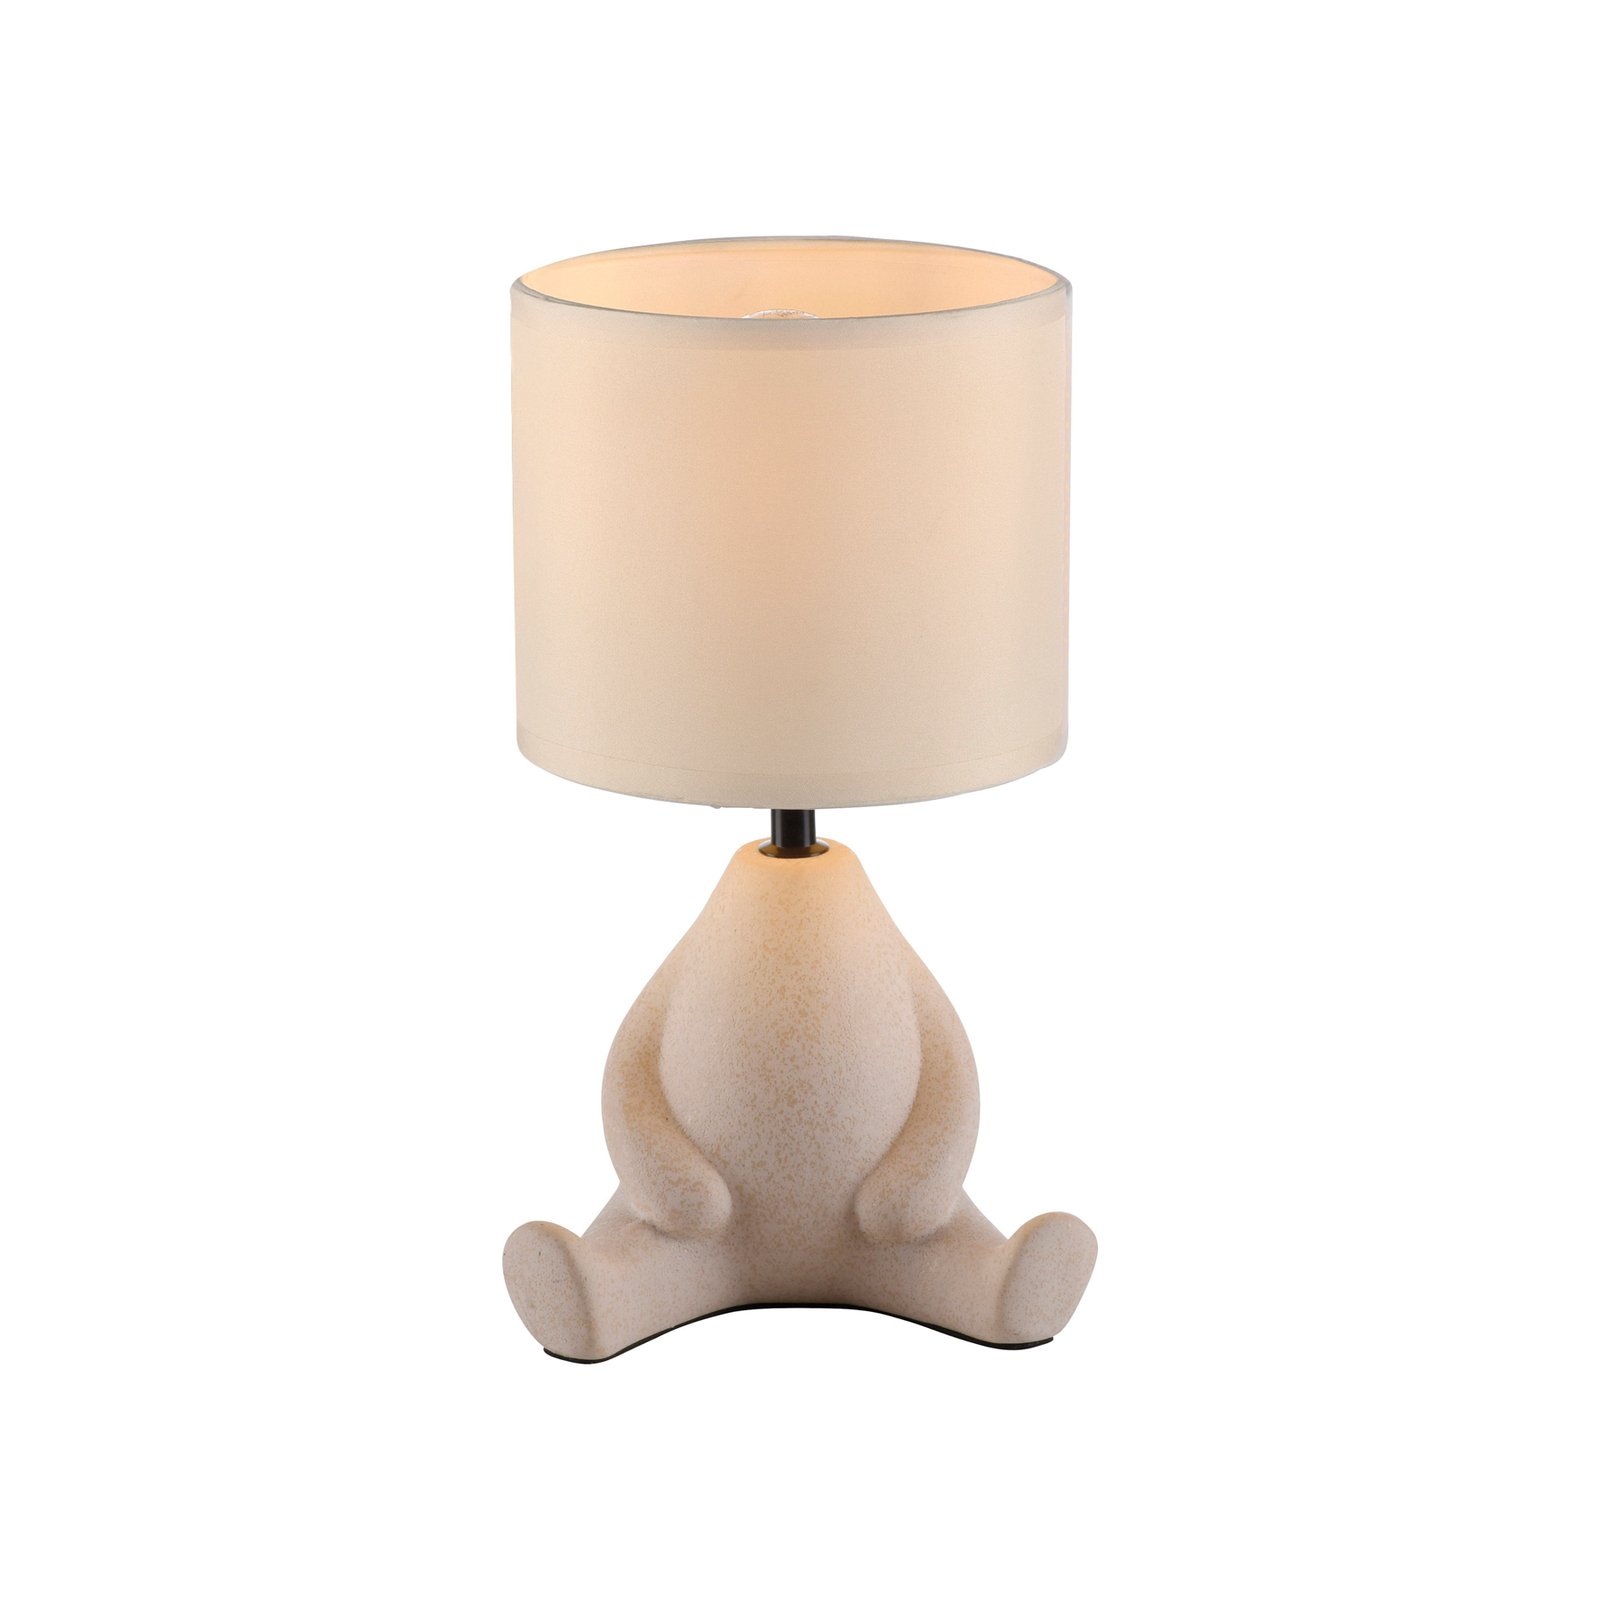 JUST LIGHT. Ted bordlampe, keramik, siddende, sandbeige